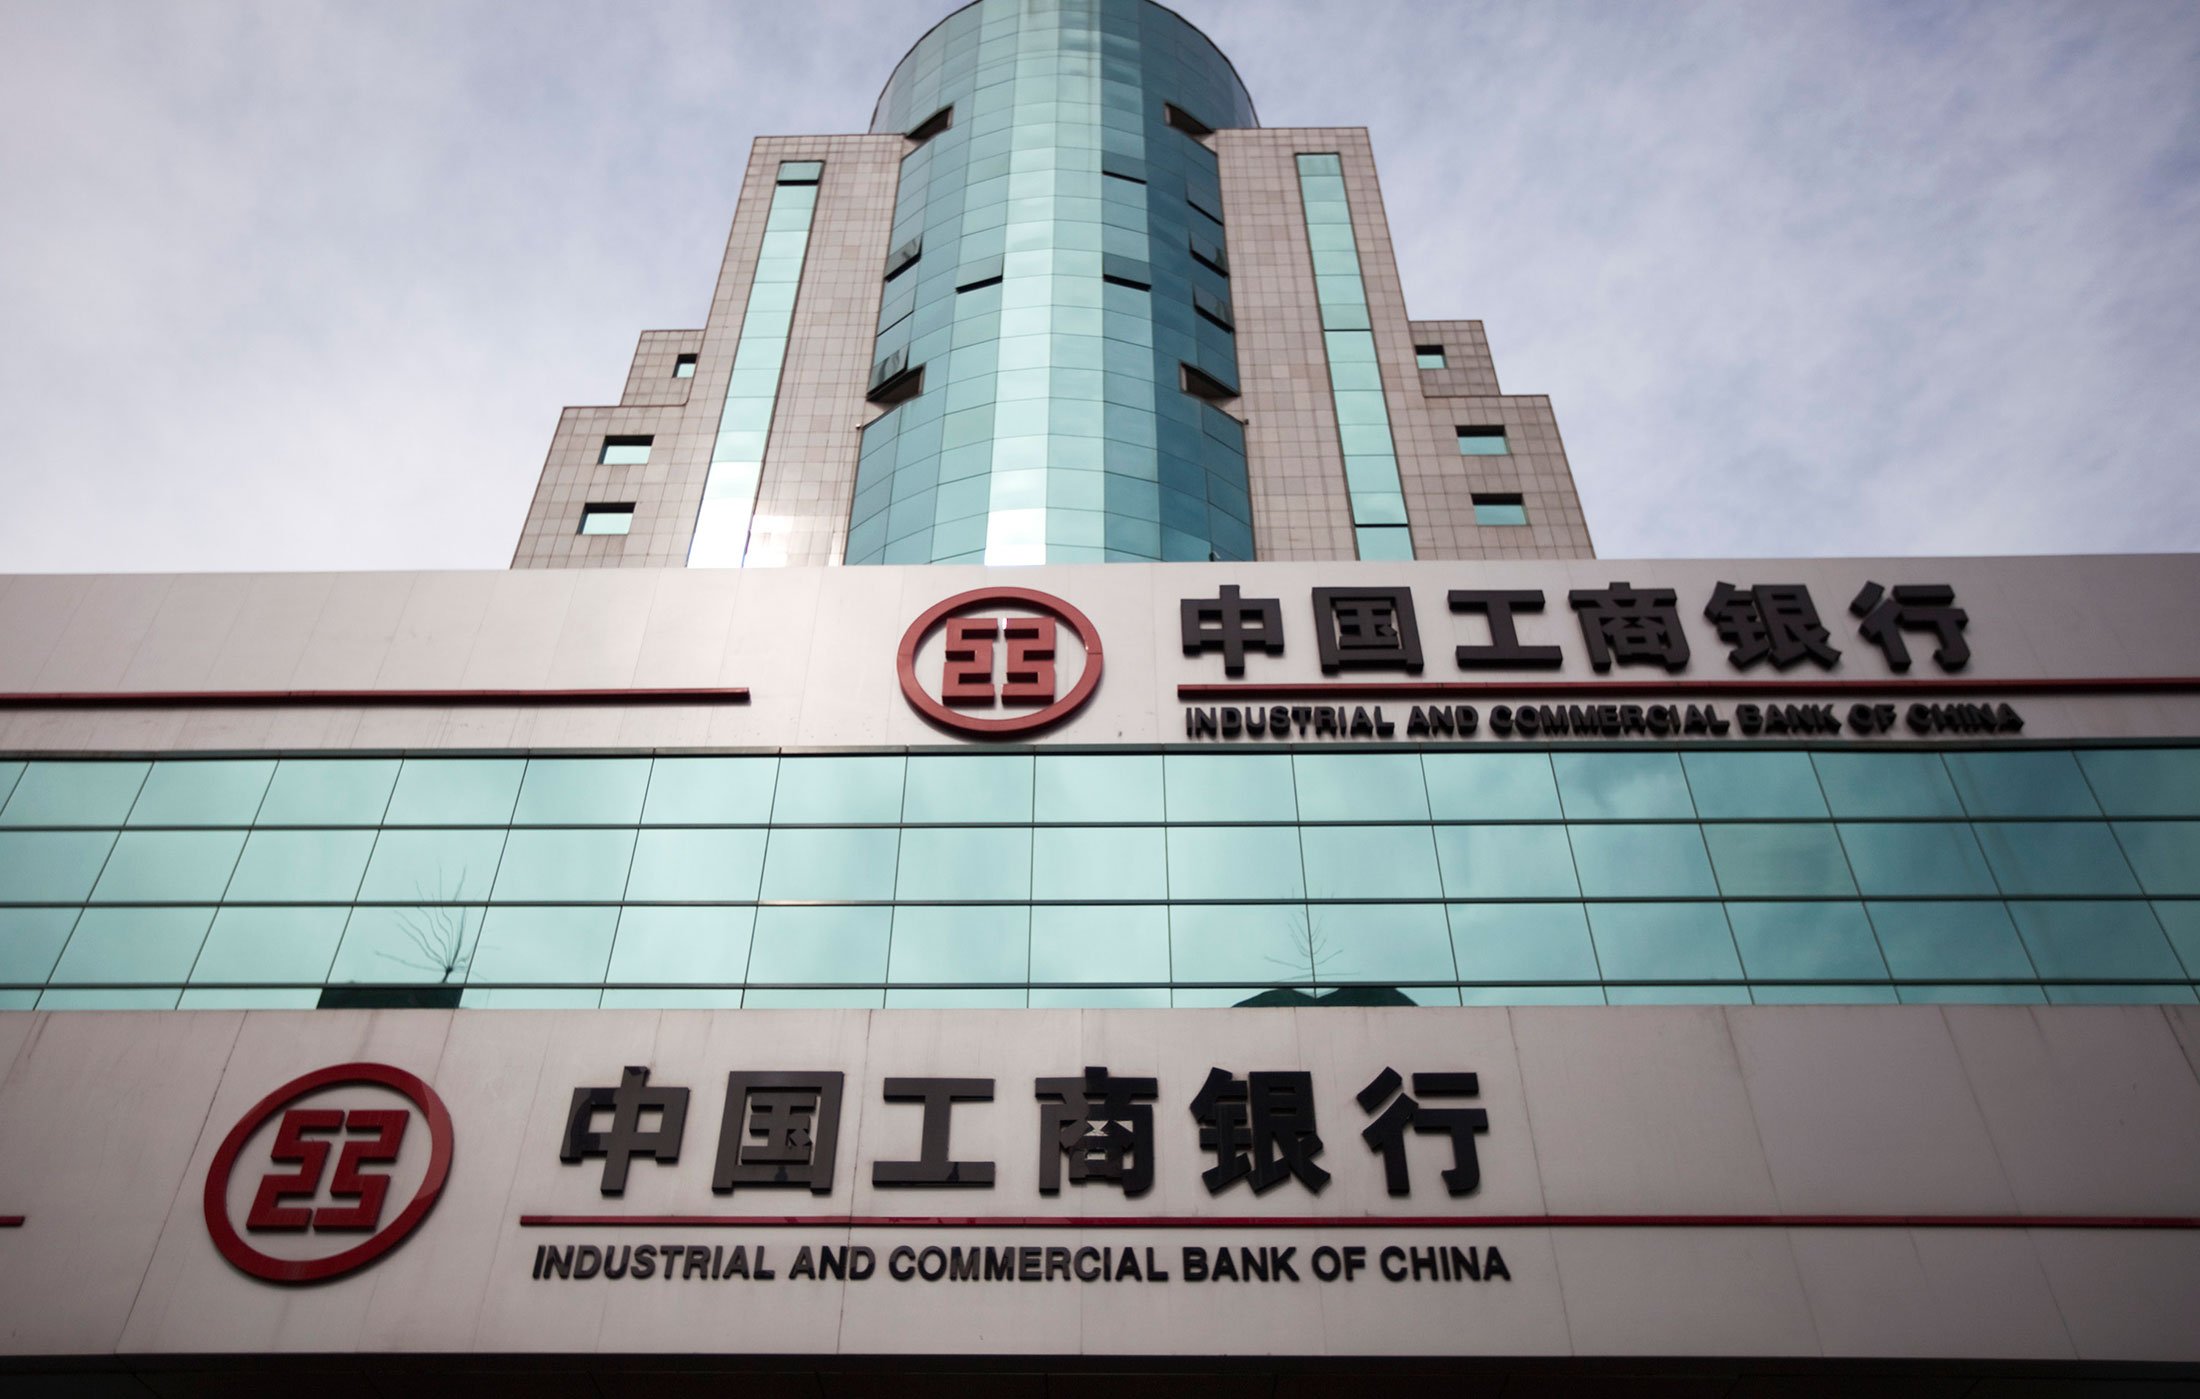 China bank. Промышленный и коммерческий банк Китая (ICBC). Индустриальный коммерческий банк Китая. Банк ICBC Китай. Самый крупный банк в мире – промышленный и коммерческий банк Китая.